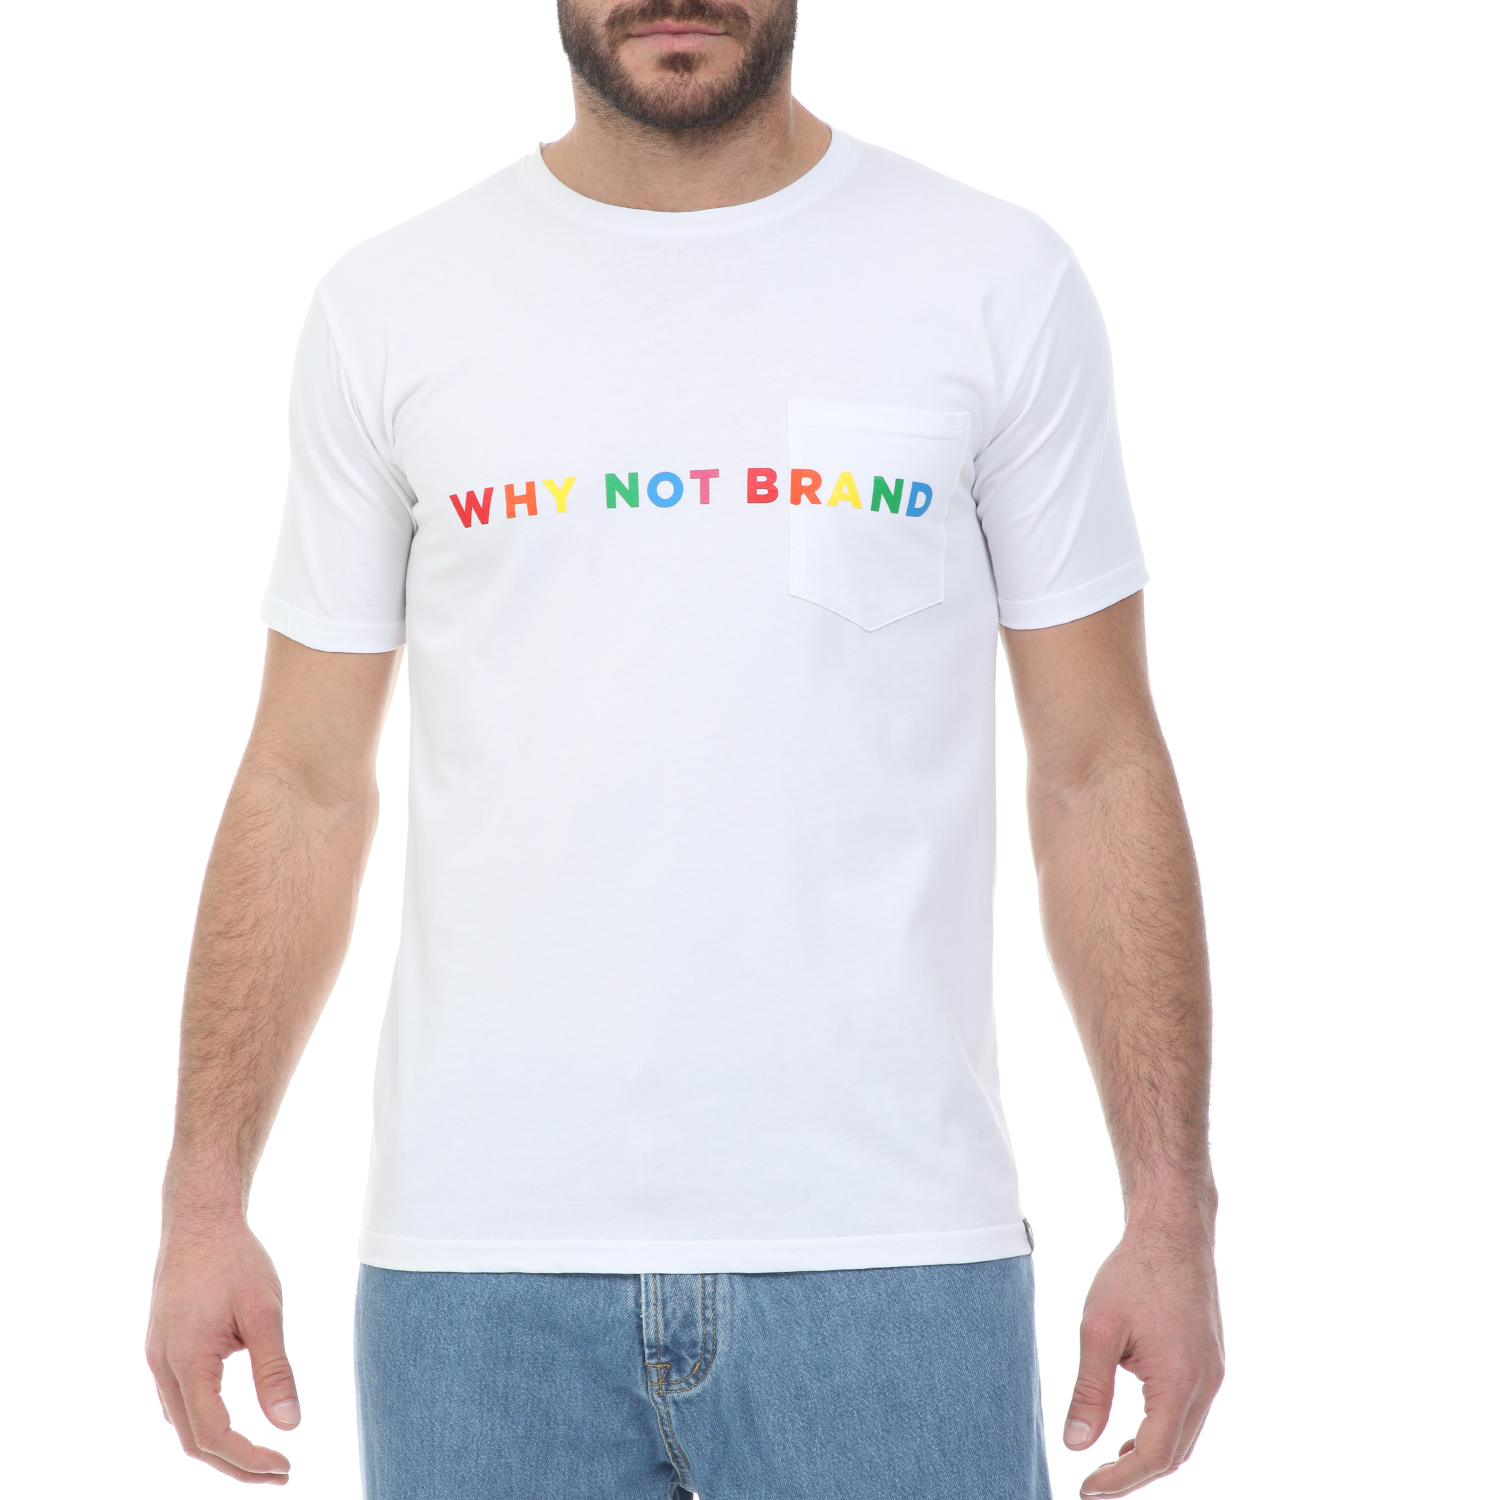 Ανδρικά/Ρούχα/Μπλούζες/Κοντομάνικες WHY NOT - Ανδρικό t-shirt WHY NOT TEE LOGO λευκό